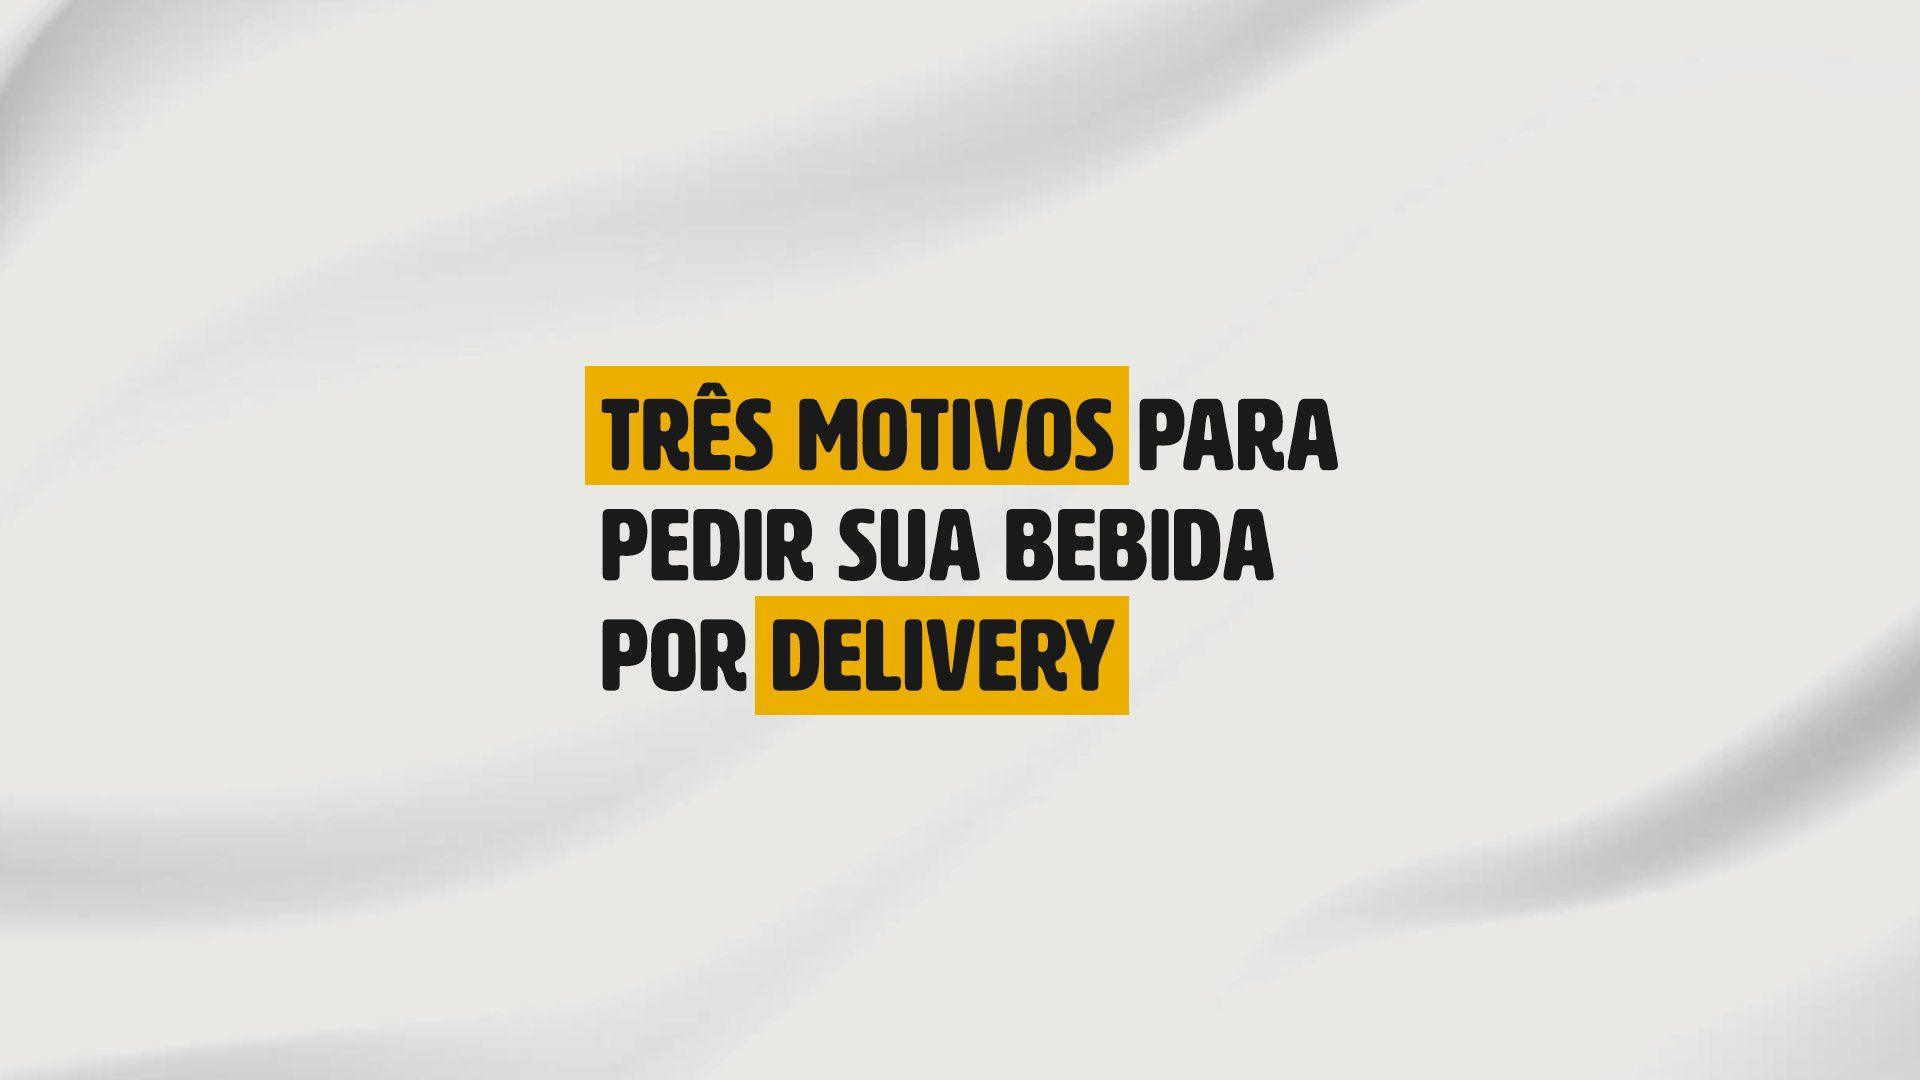 Voces precisam pedir antes que acabe! #fy #viral #joaopessoa #delivery